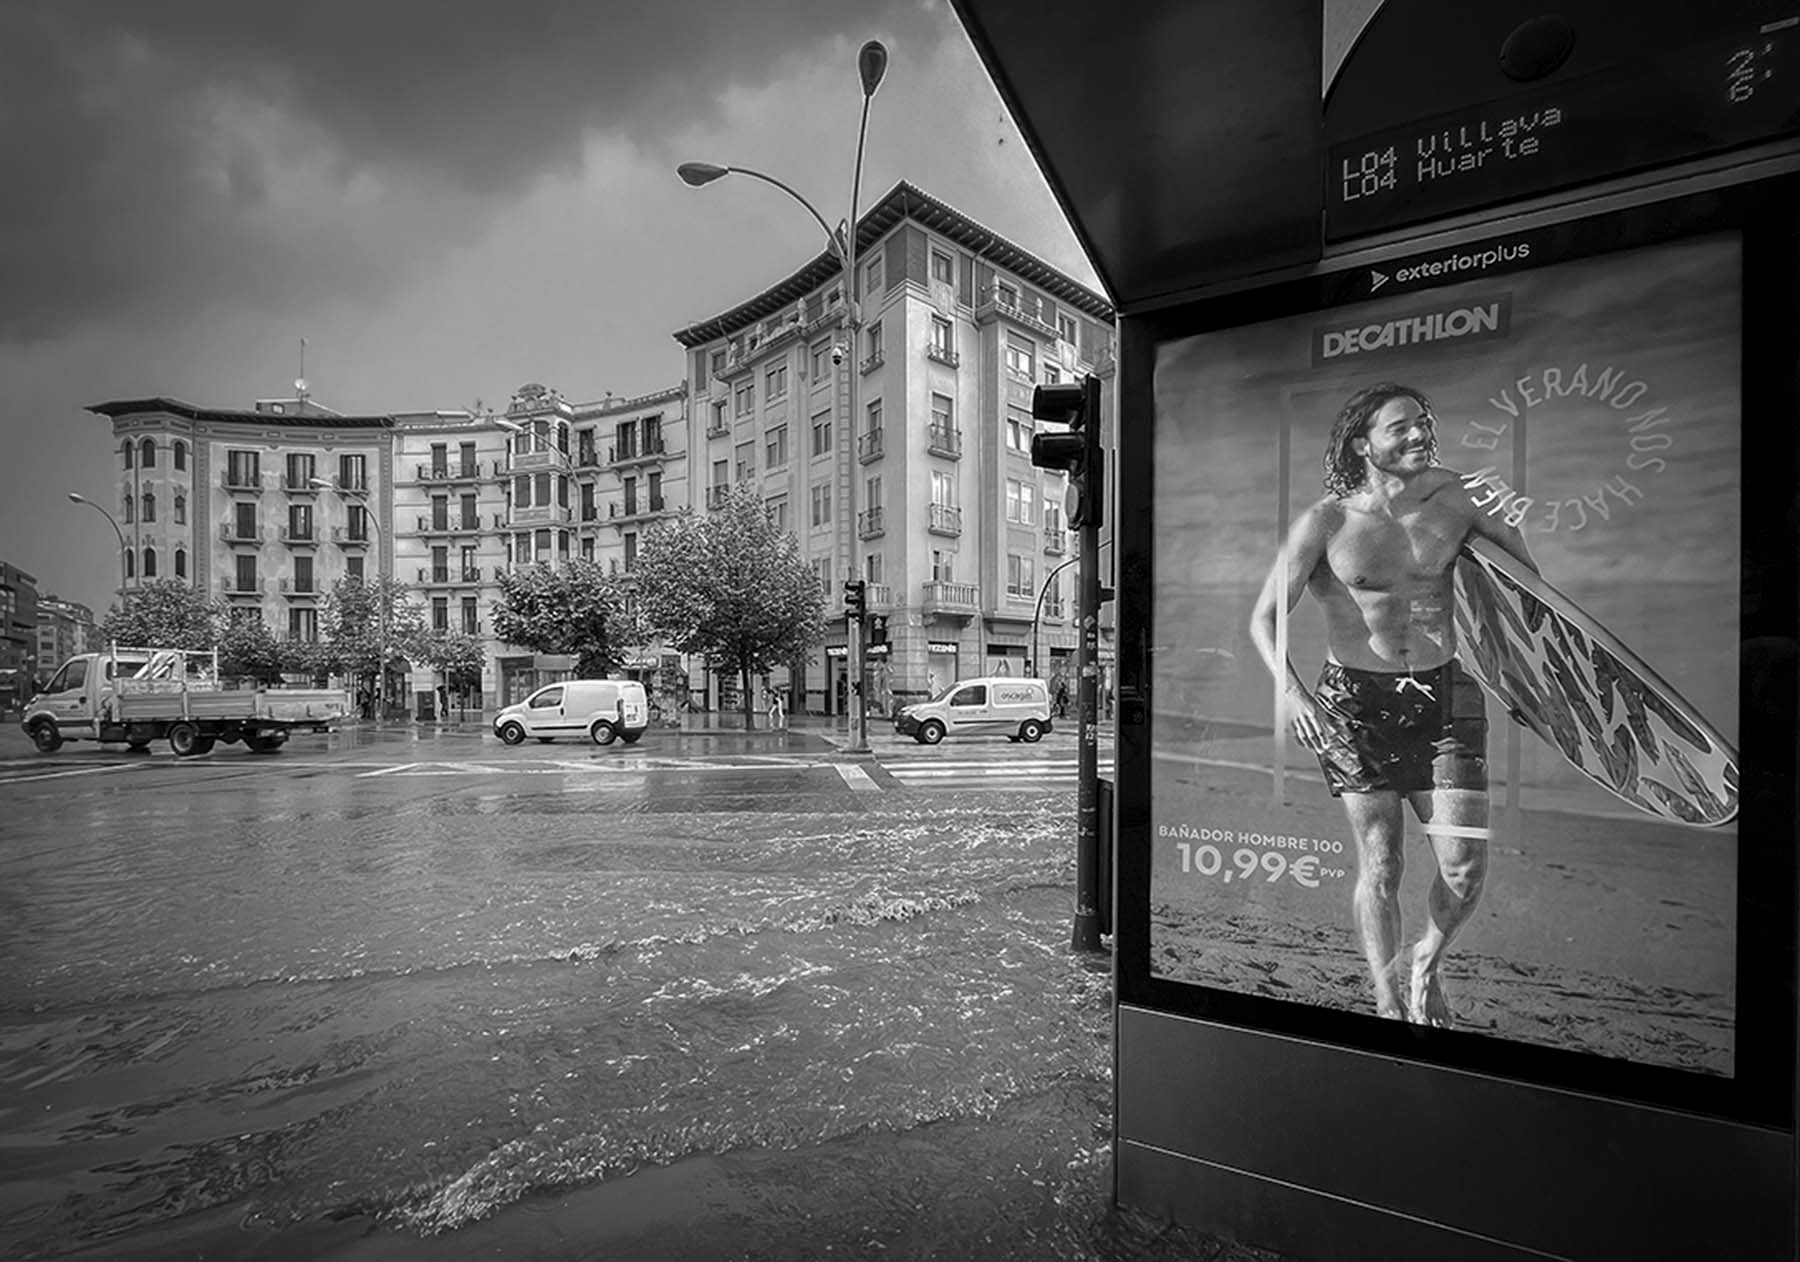 La ironía también cabe en el fotoperiodismo. La plaza de las Merindades de Pamplona, el 1 de junio de 2023 tras una descomunal tormenta (Foto Efe/Villar López)